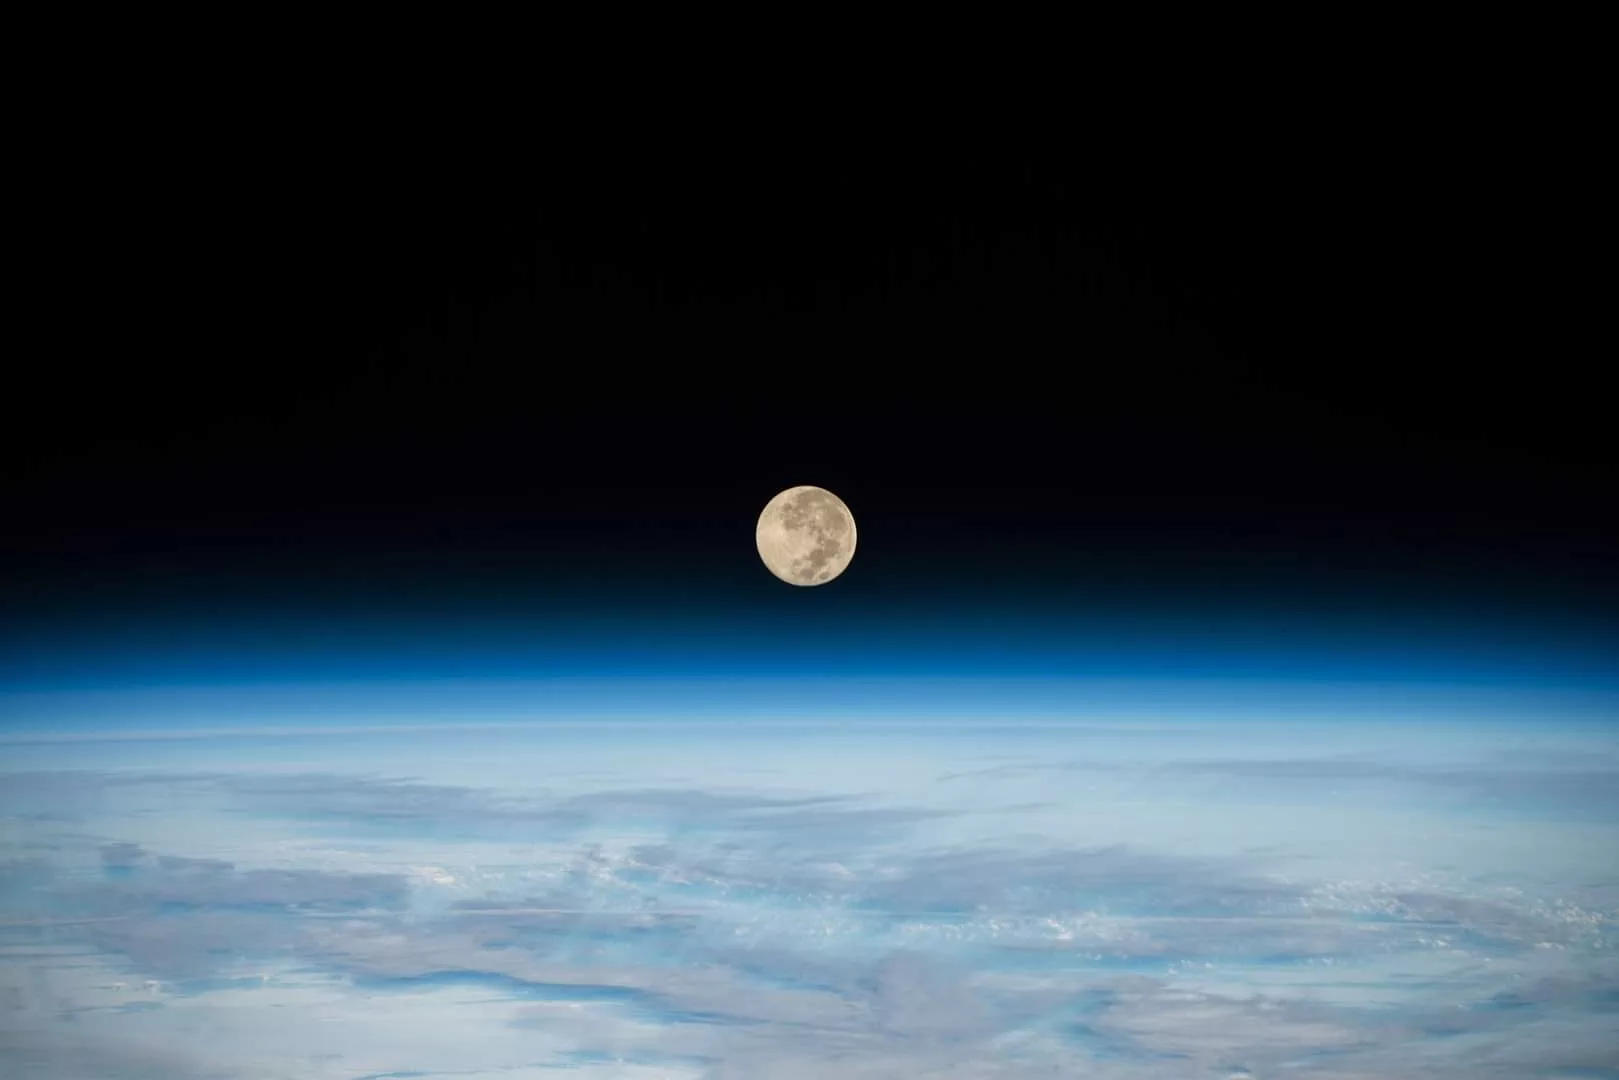 Photo prise par la NASA depuis l'ISS (Station Spatiale Internationale) où l'on voit la lune à la surface de l'atmosphère bleue de la Terre